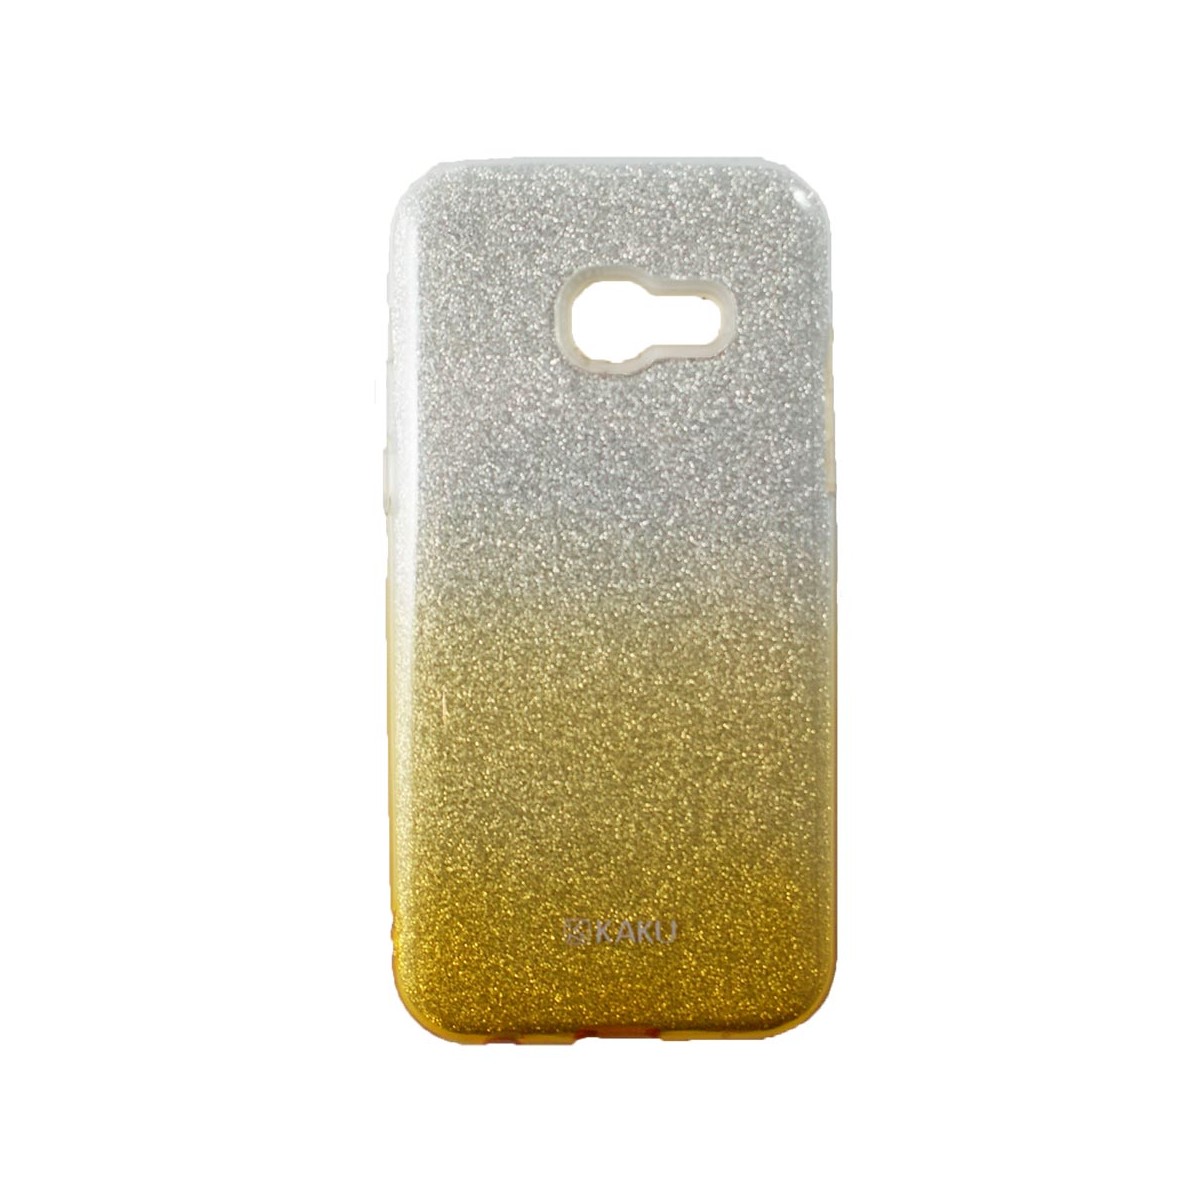 Coque Galaxy A3 (2017) à paillettes dorées et argentées - Kaku